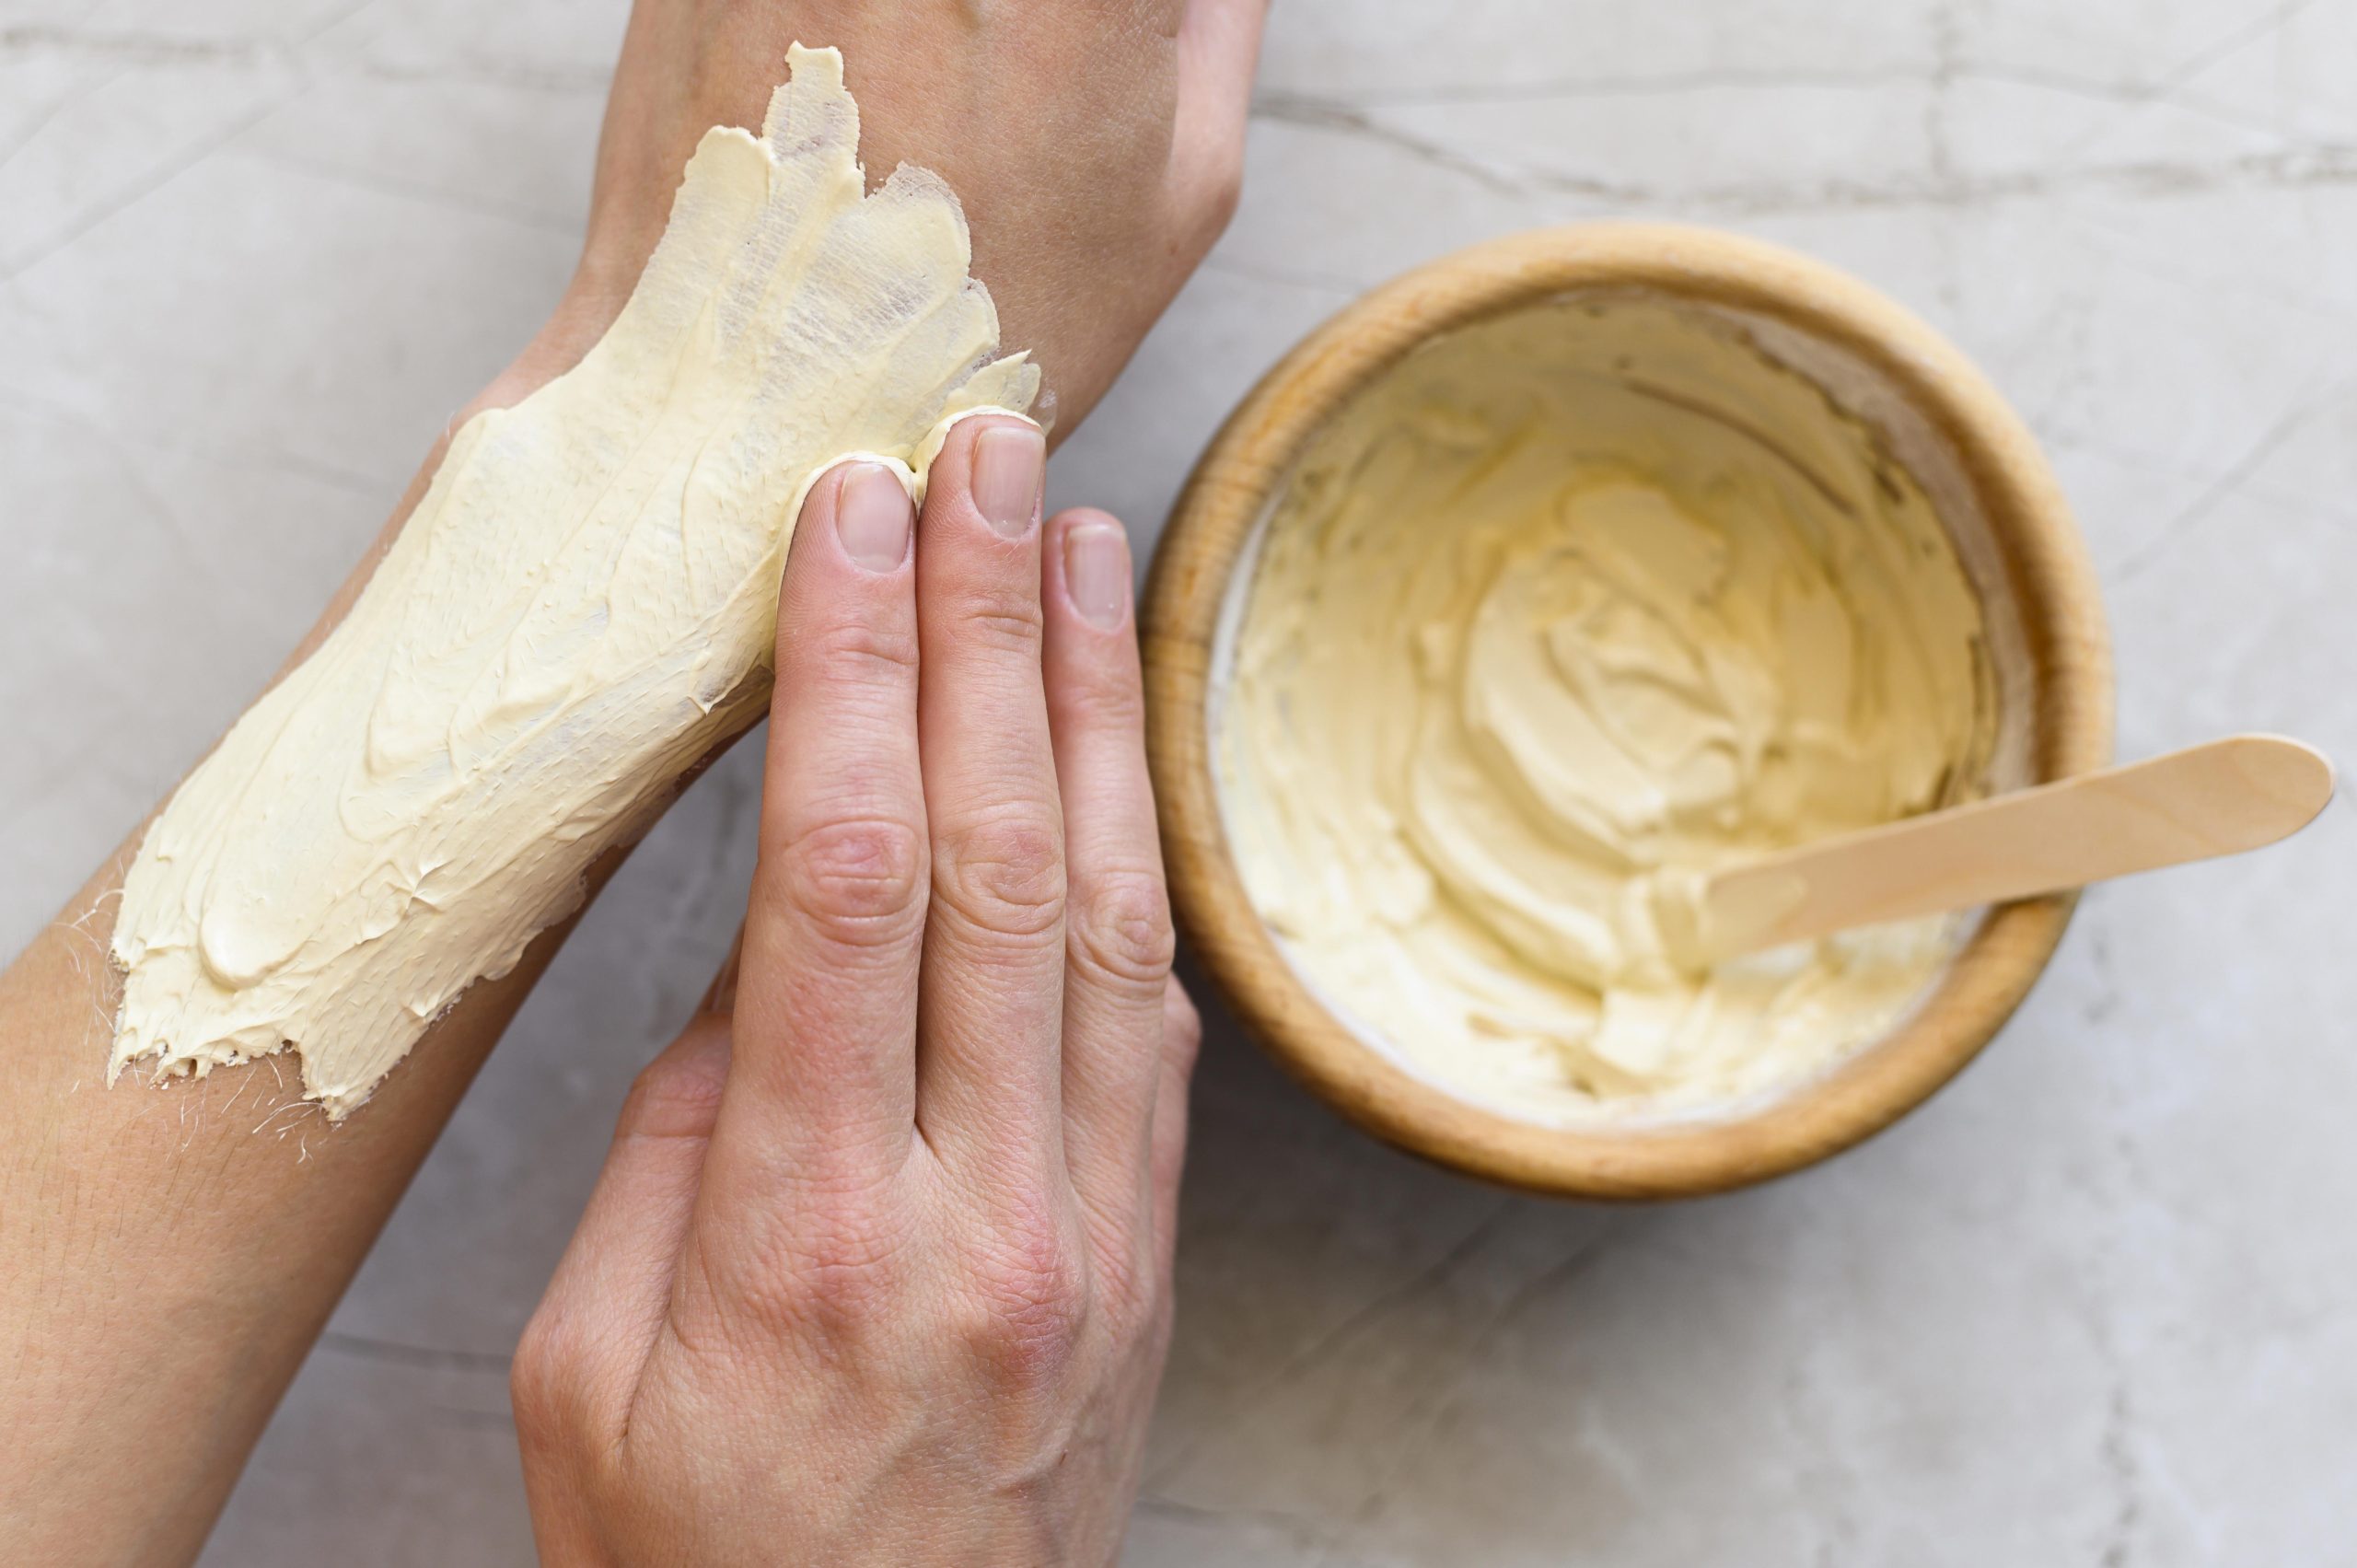 6 Kelebihan Body Butter yang Bisa Mempercantik Kulit Agar Halus dan Lembut